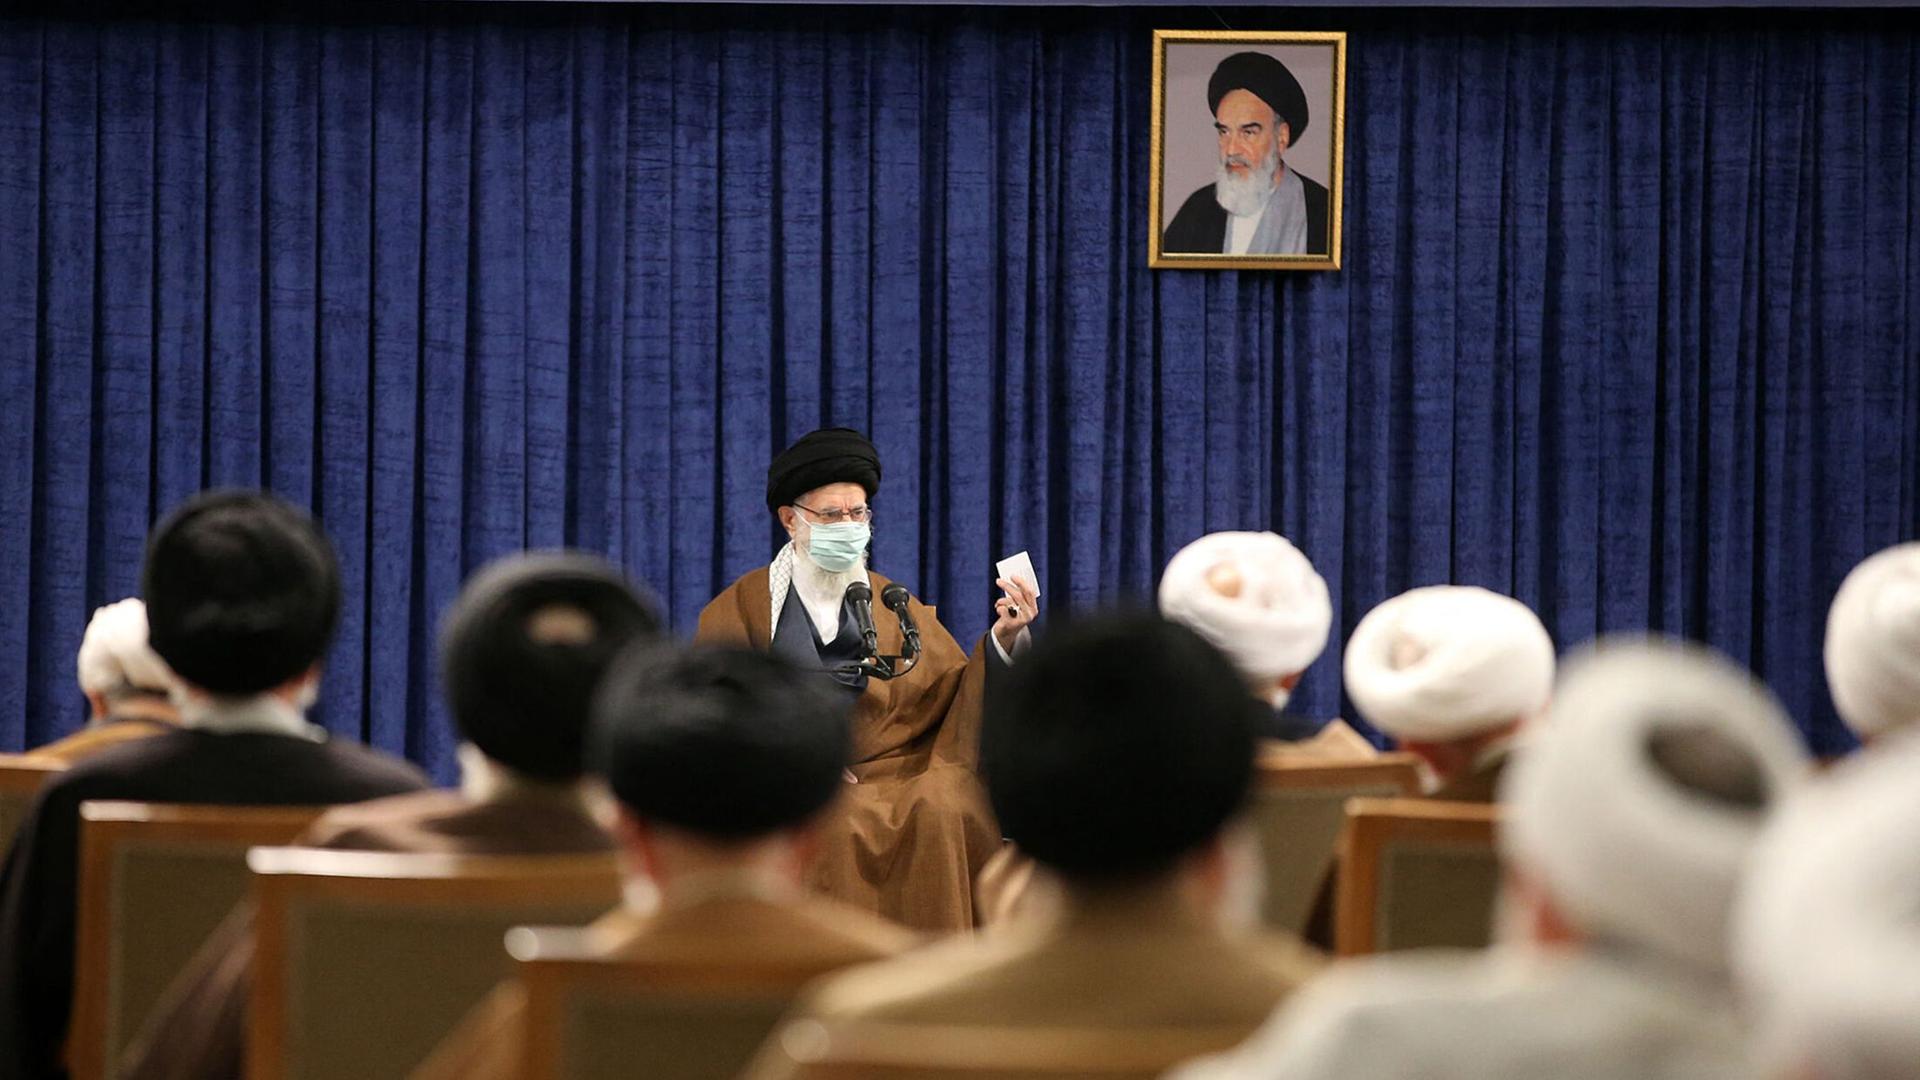 Der Expertenrat im Iran. Mehrere Menschen nehmen an einer Sitzung teil.